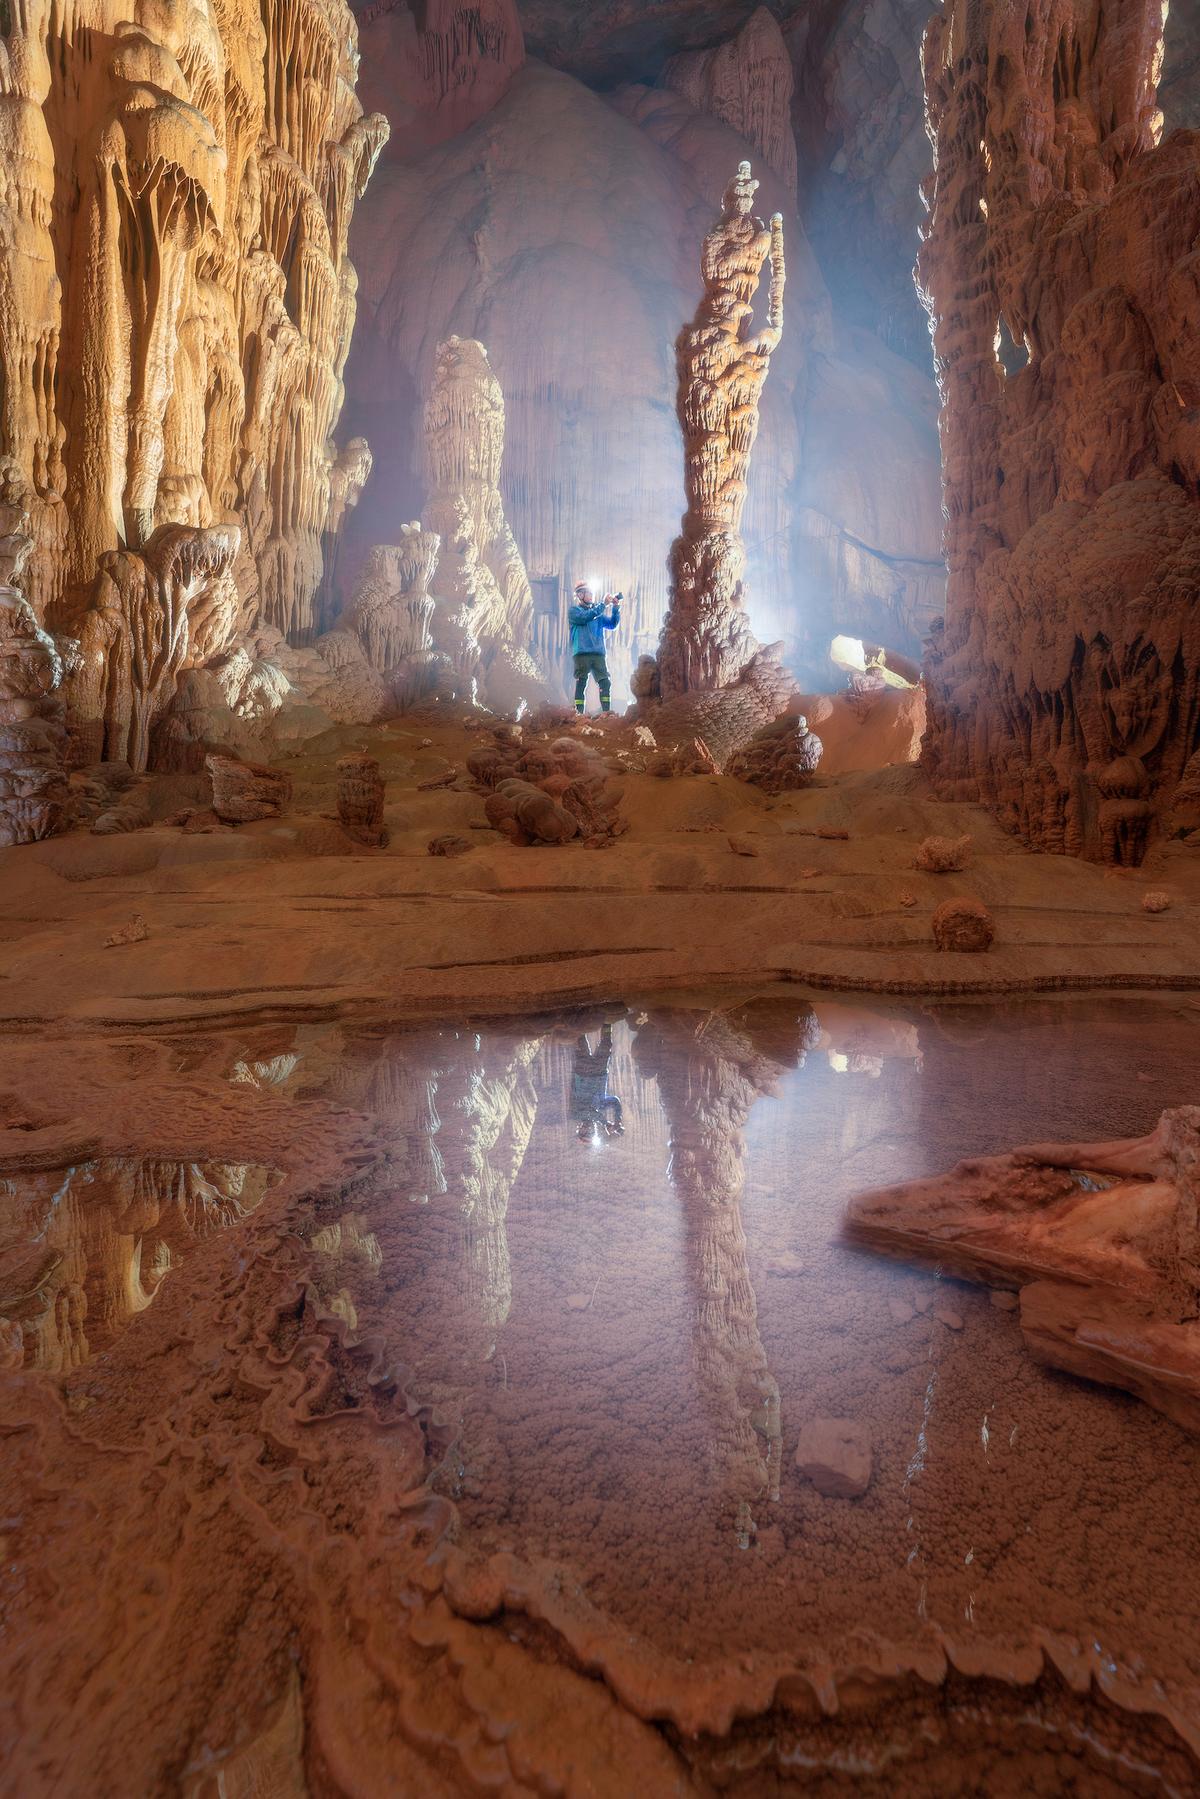 An explorer photographs inside Hung Cave. (Courtesy of Cao Ky Nhan via Jungle Boss Tours)